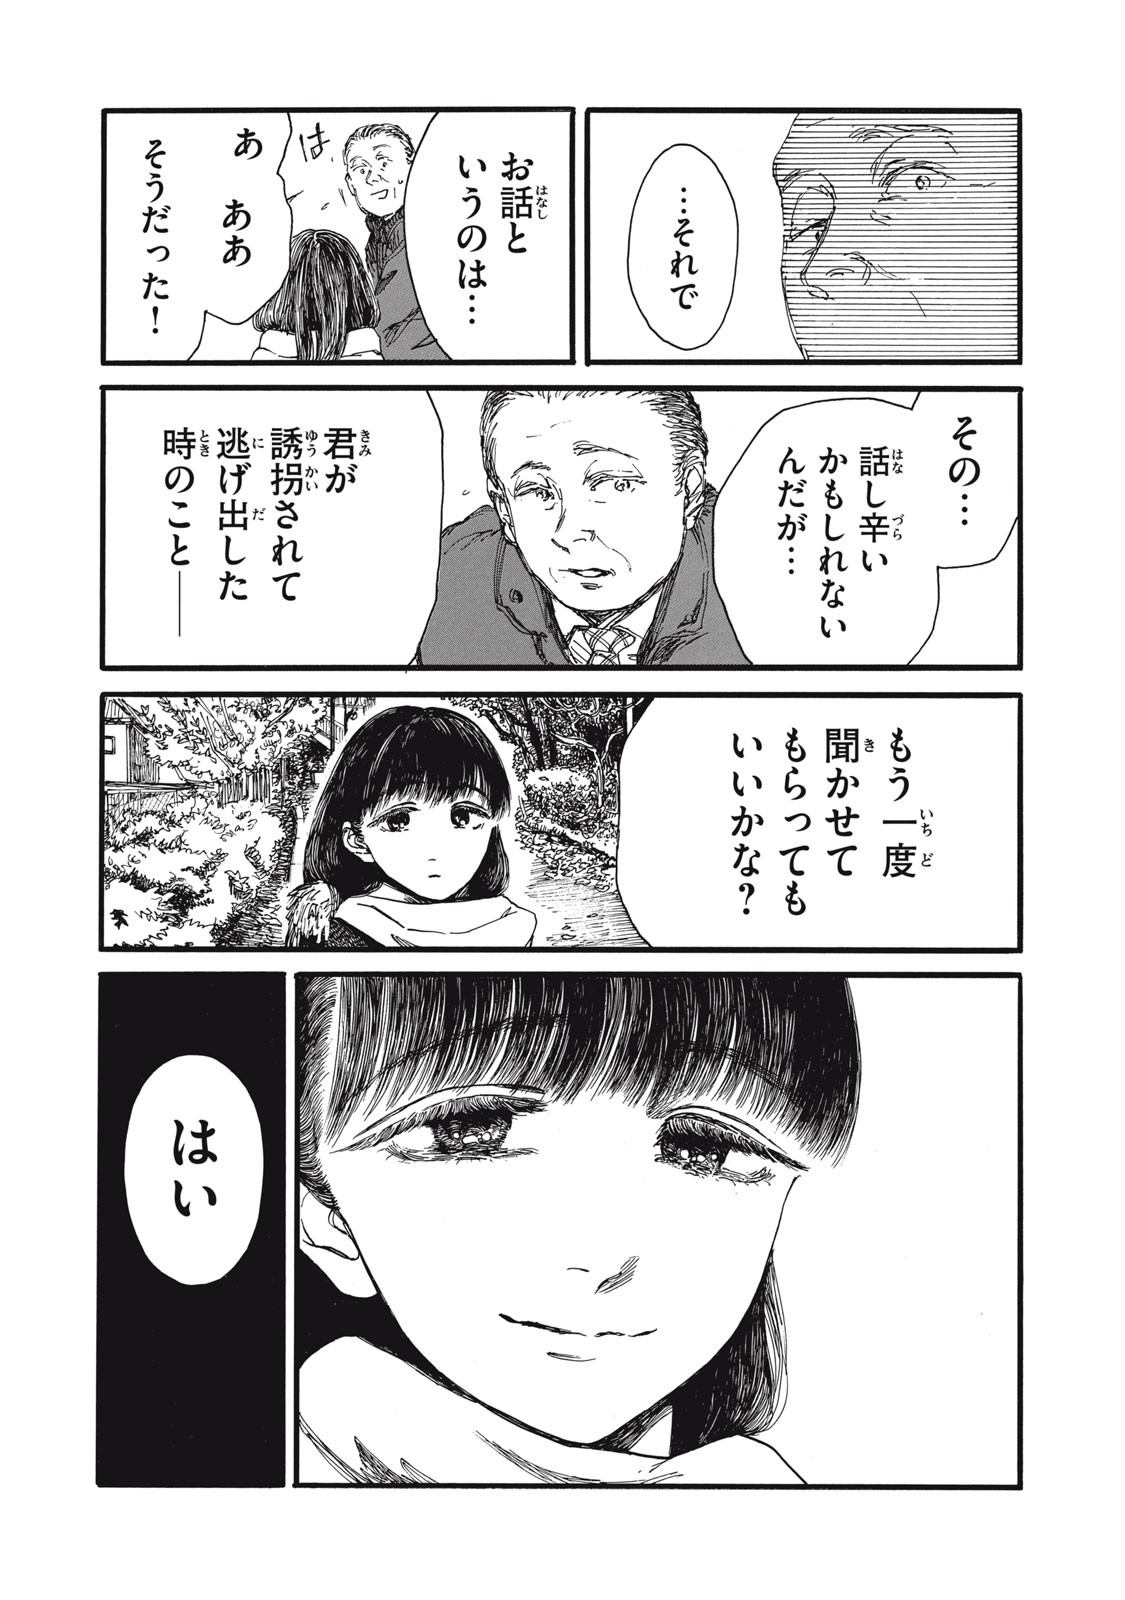 Watashi no Hara no Naka no Bakemono - Chapter 39 - Page 16